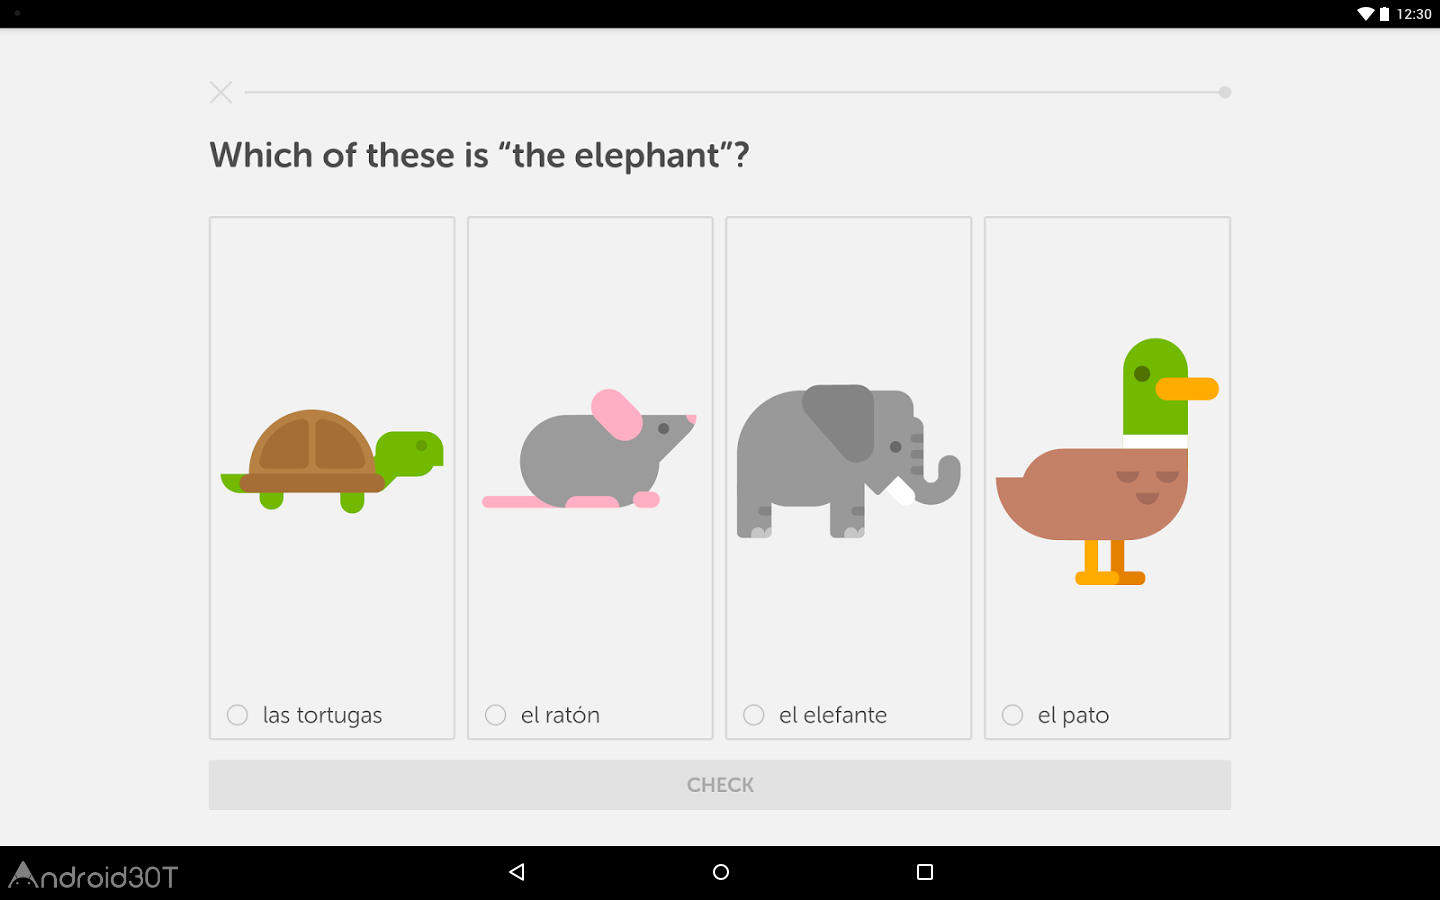 دانلود Duolingo 5.81.4 – برنامه یادگیری زبان های خارجی اندروید